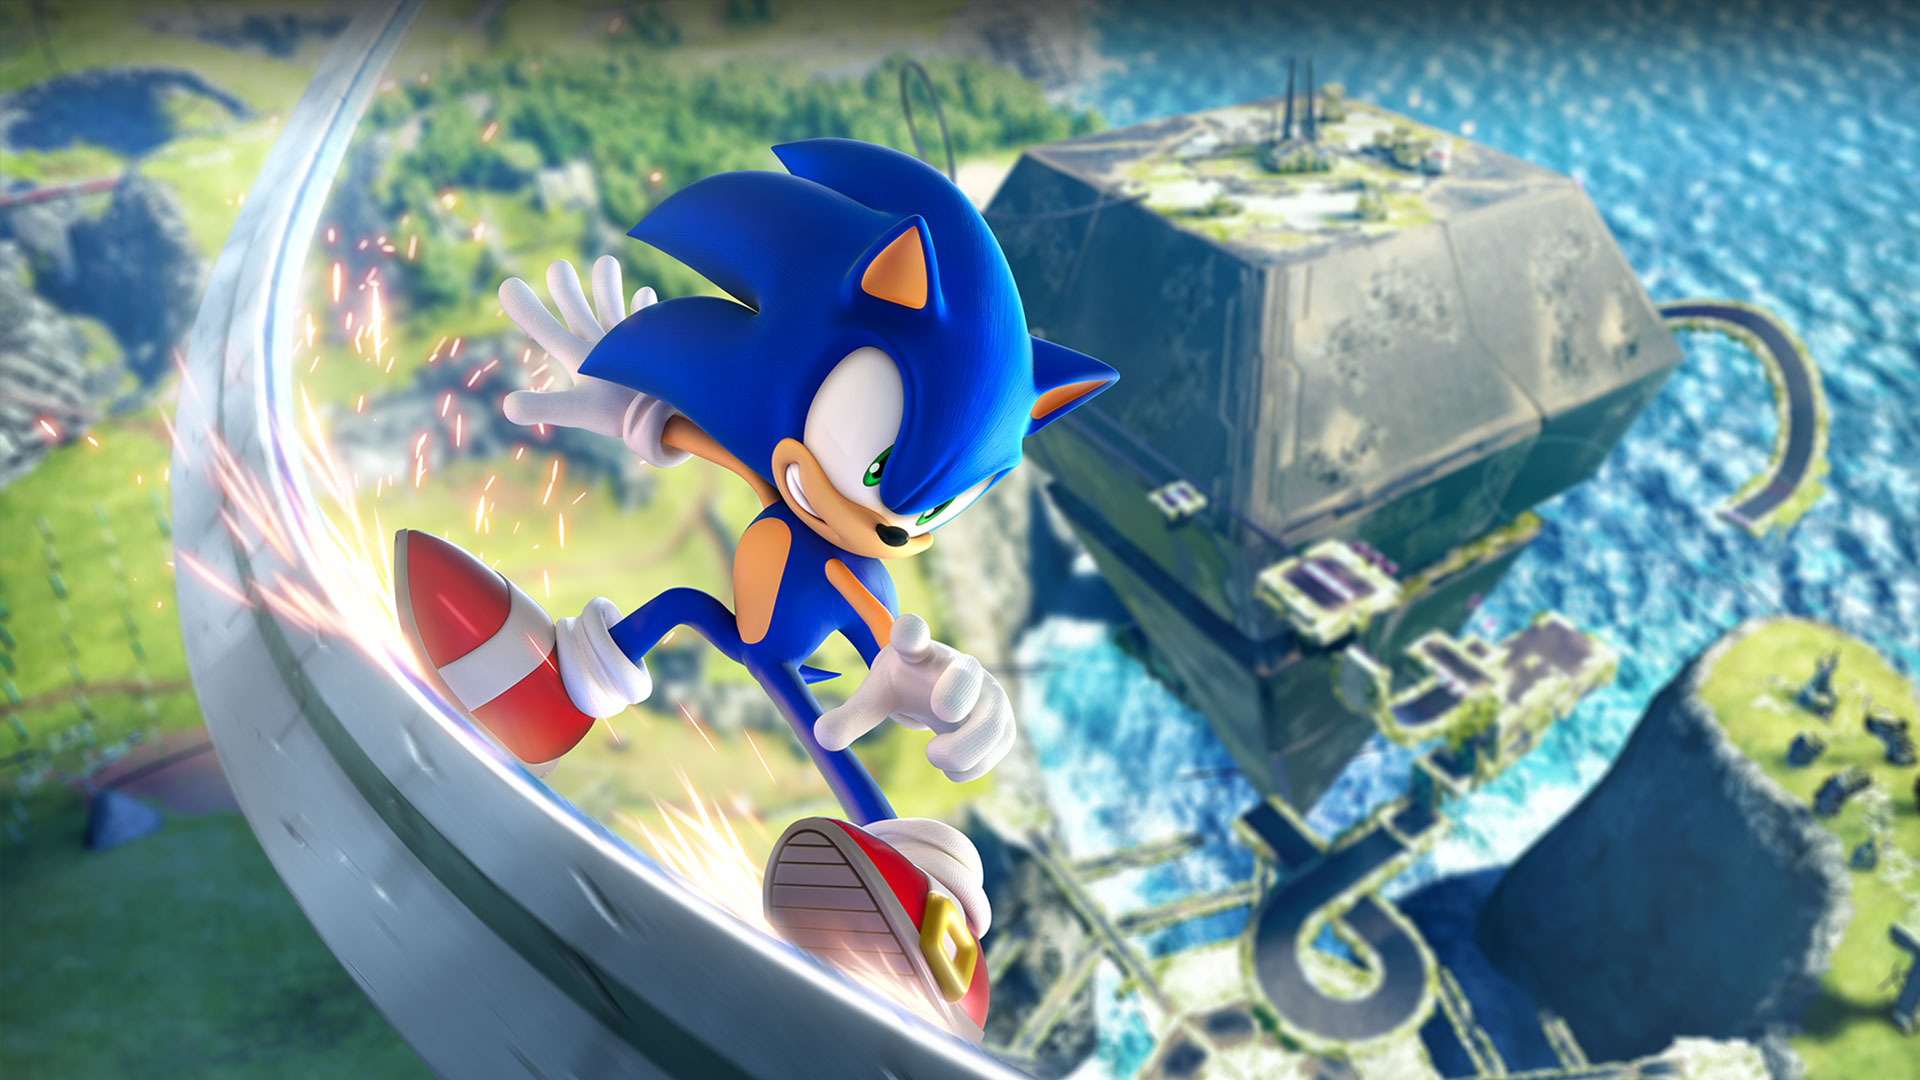 Sonic은 그린존보다 훨씬 더 빠른 속도로 레일 위를 달립니다.